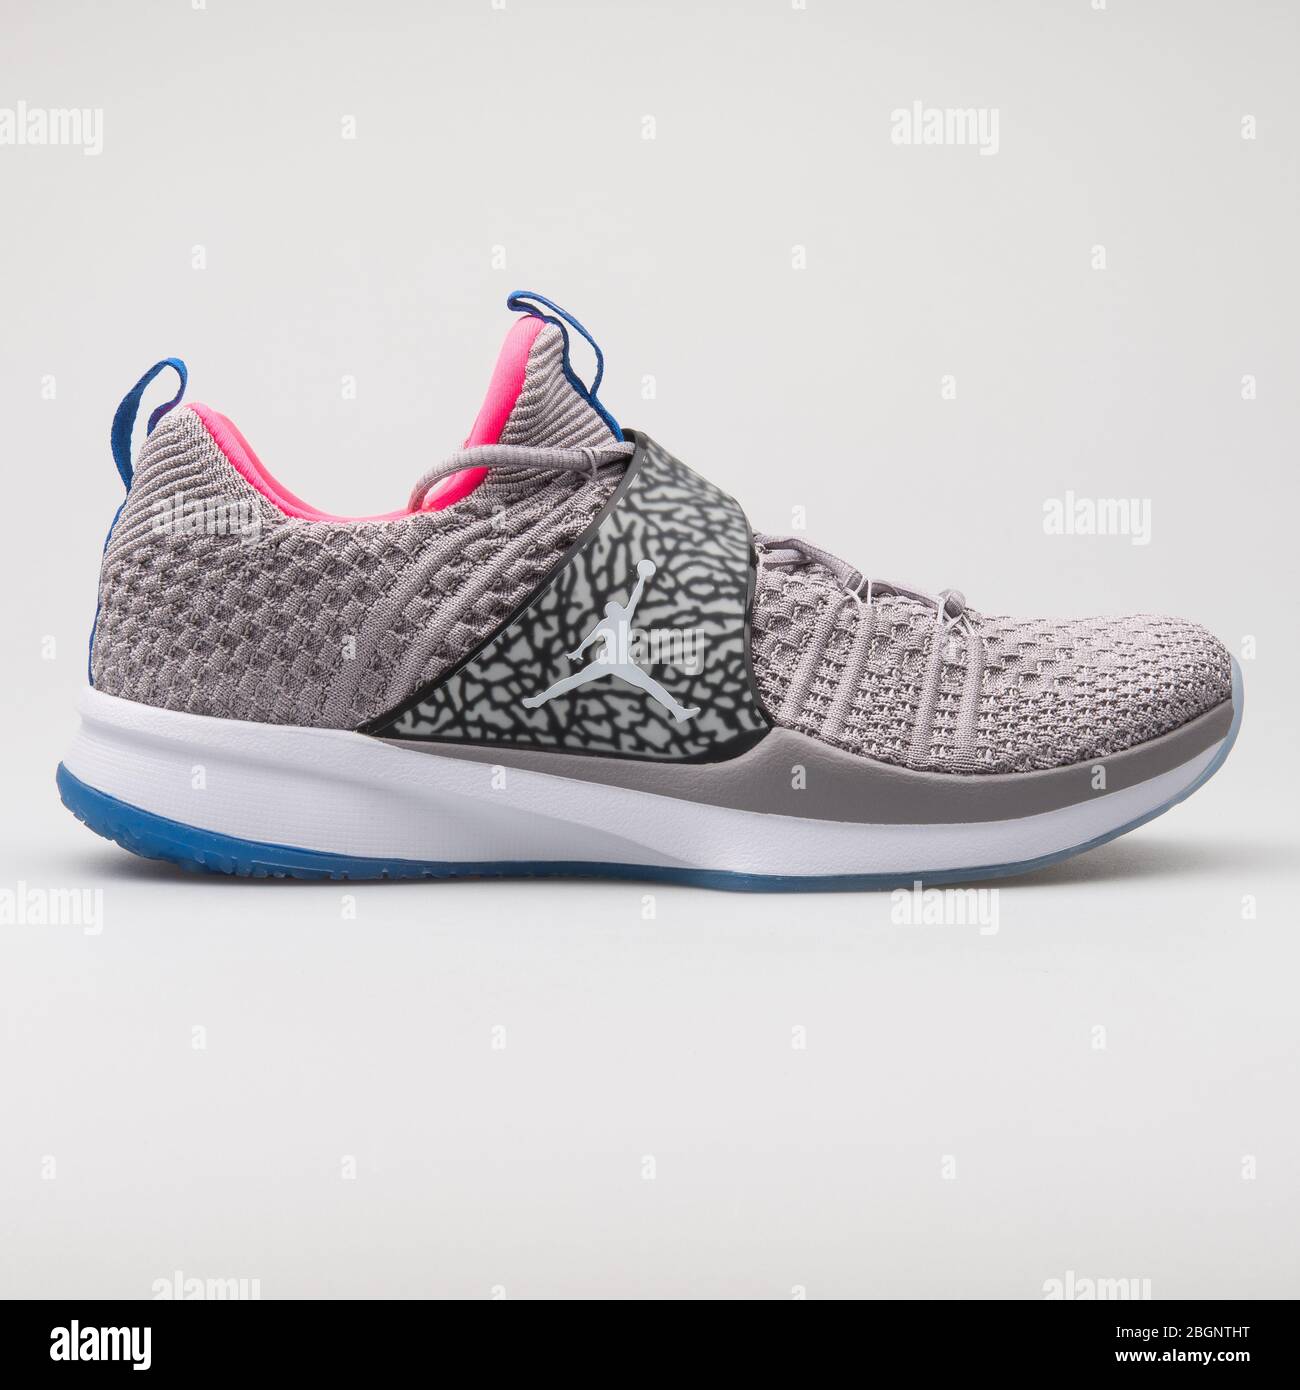 Deudor Espíritu consumidor VIENA, AUSTRIA - 29 DE AGOSTO de 2017: Nike Air Jordan Trainer 2 Flyknit  sneakers en color gris, rosa y azul sobre fondo blanco Fotografía de stock  - Alamy